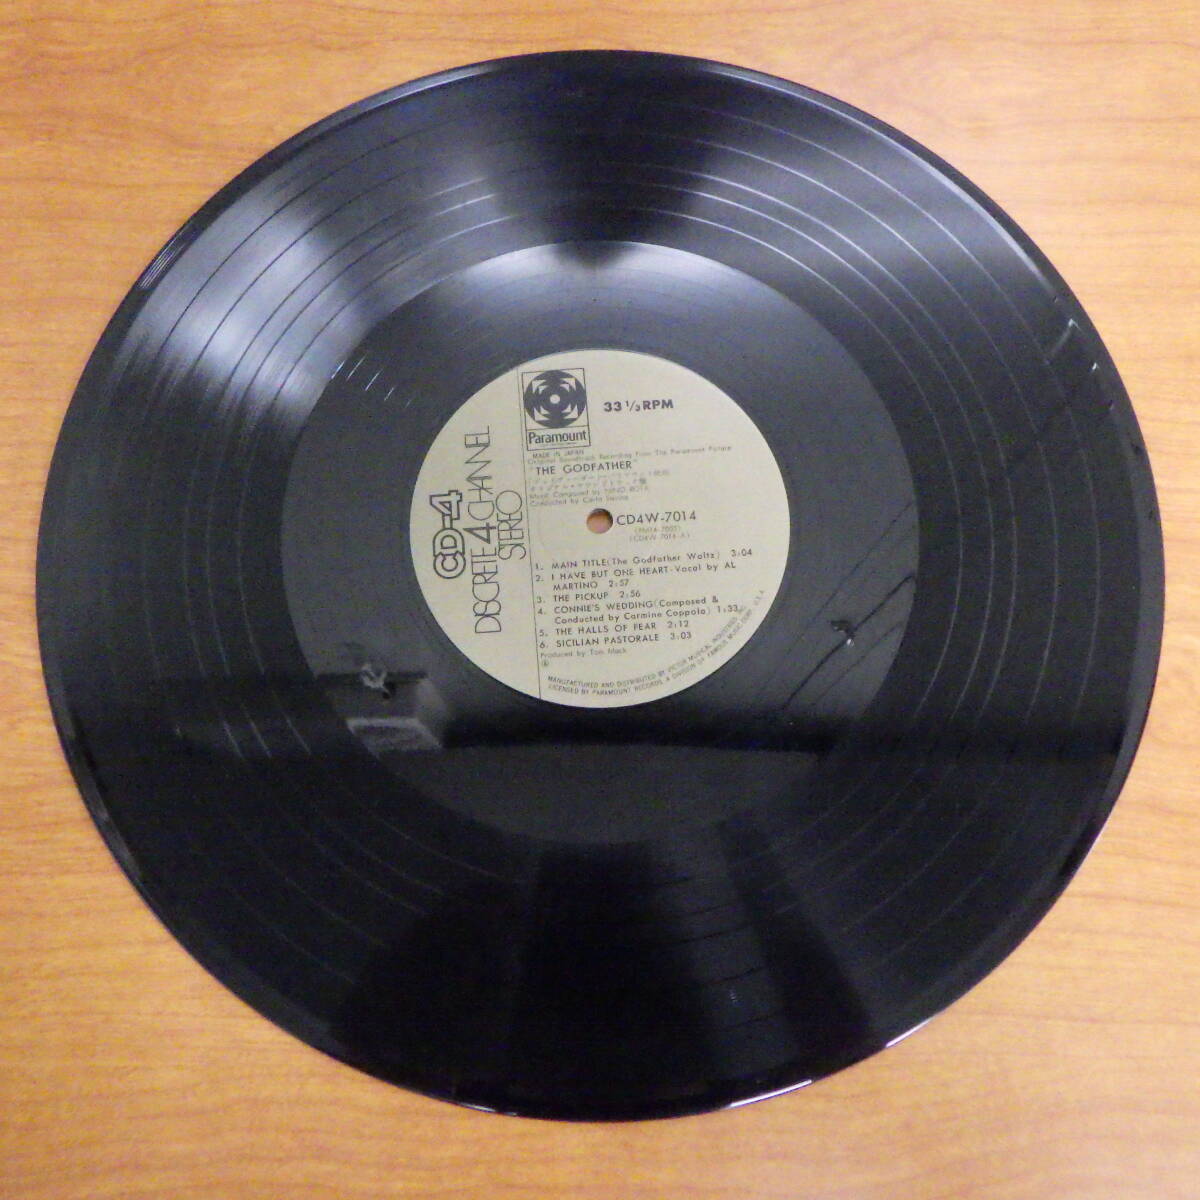 LP レコード ORIGINAL SOUNDTRACK THE GODFATHER ゴッドファーザー オリジナル・サウンドトラック盤 CD4W-7014の画像5